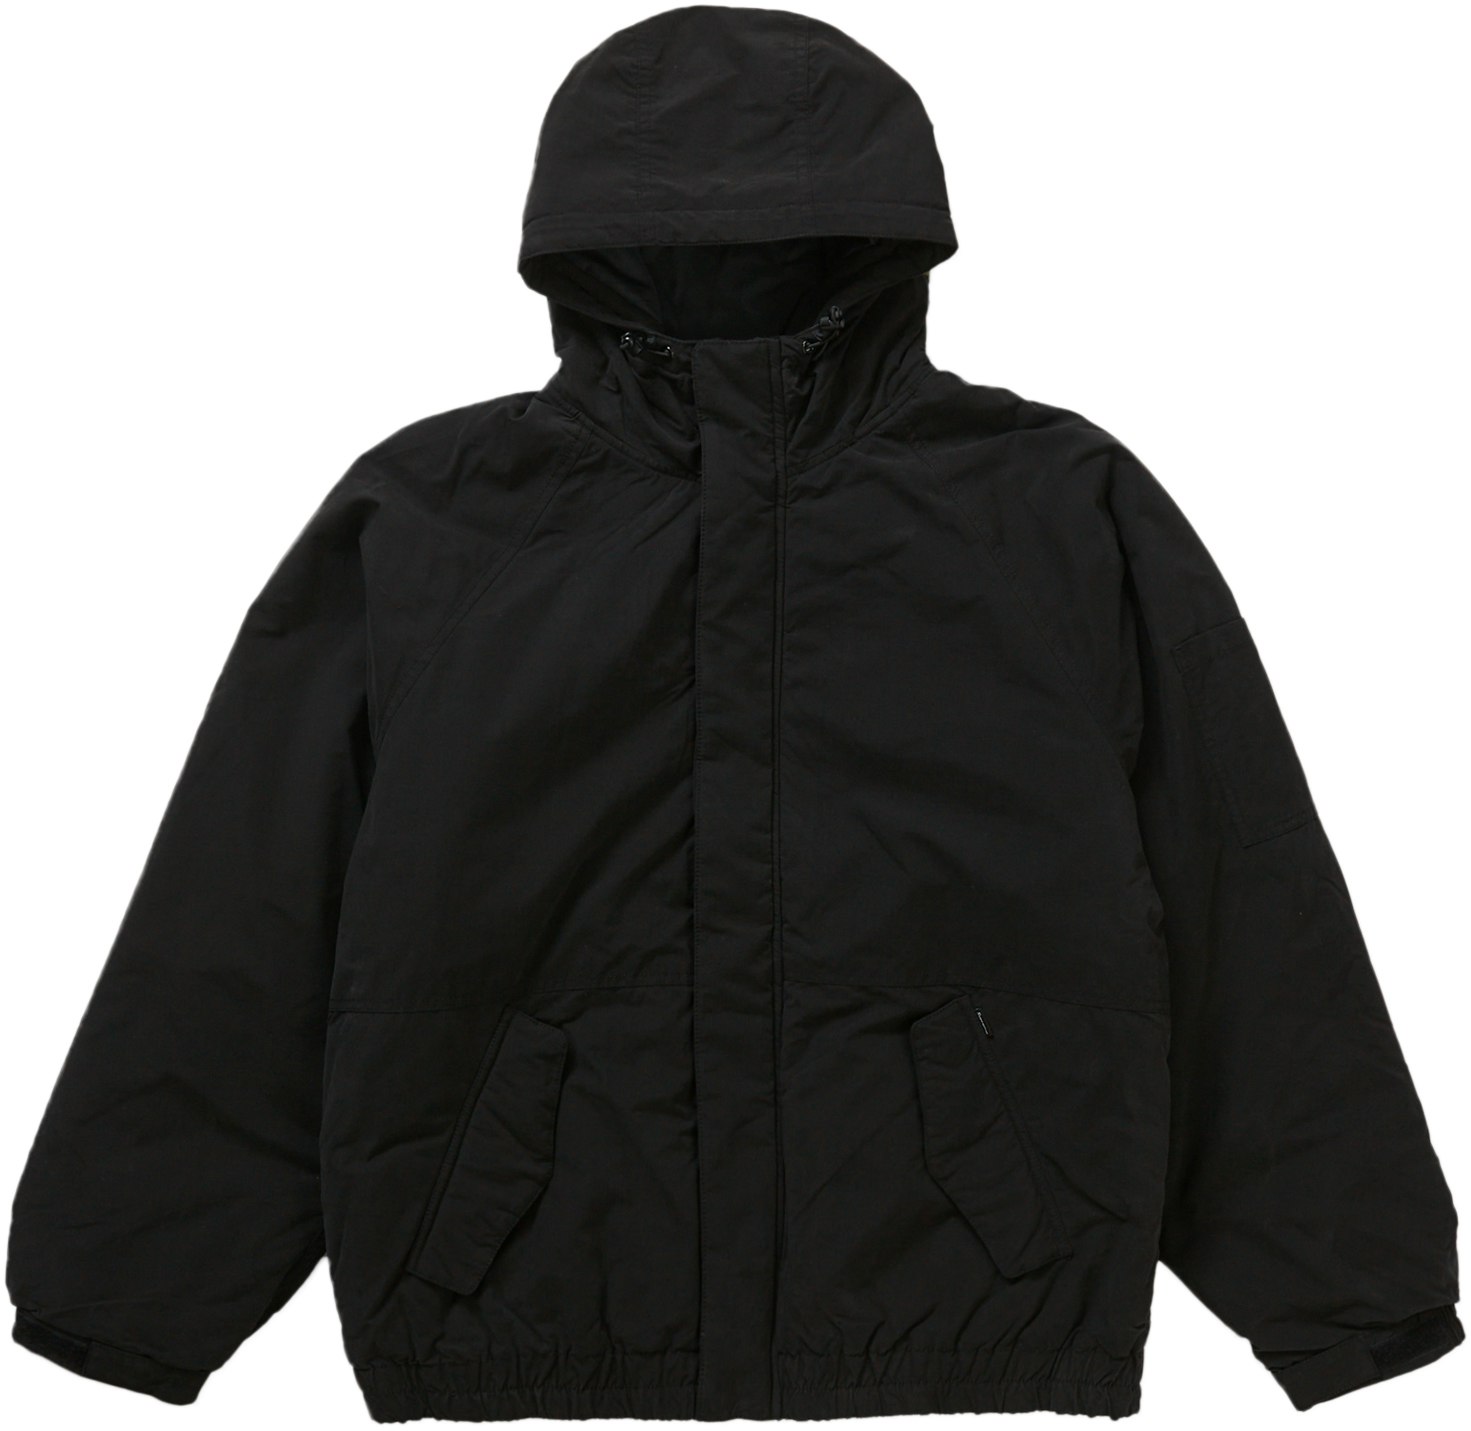 Needlepoint Hooded Jacket Black Largeジャケット・アウター